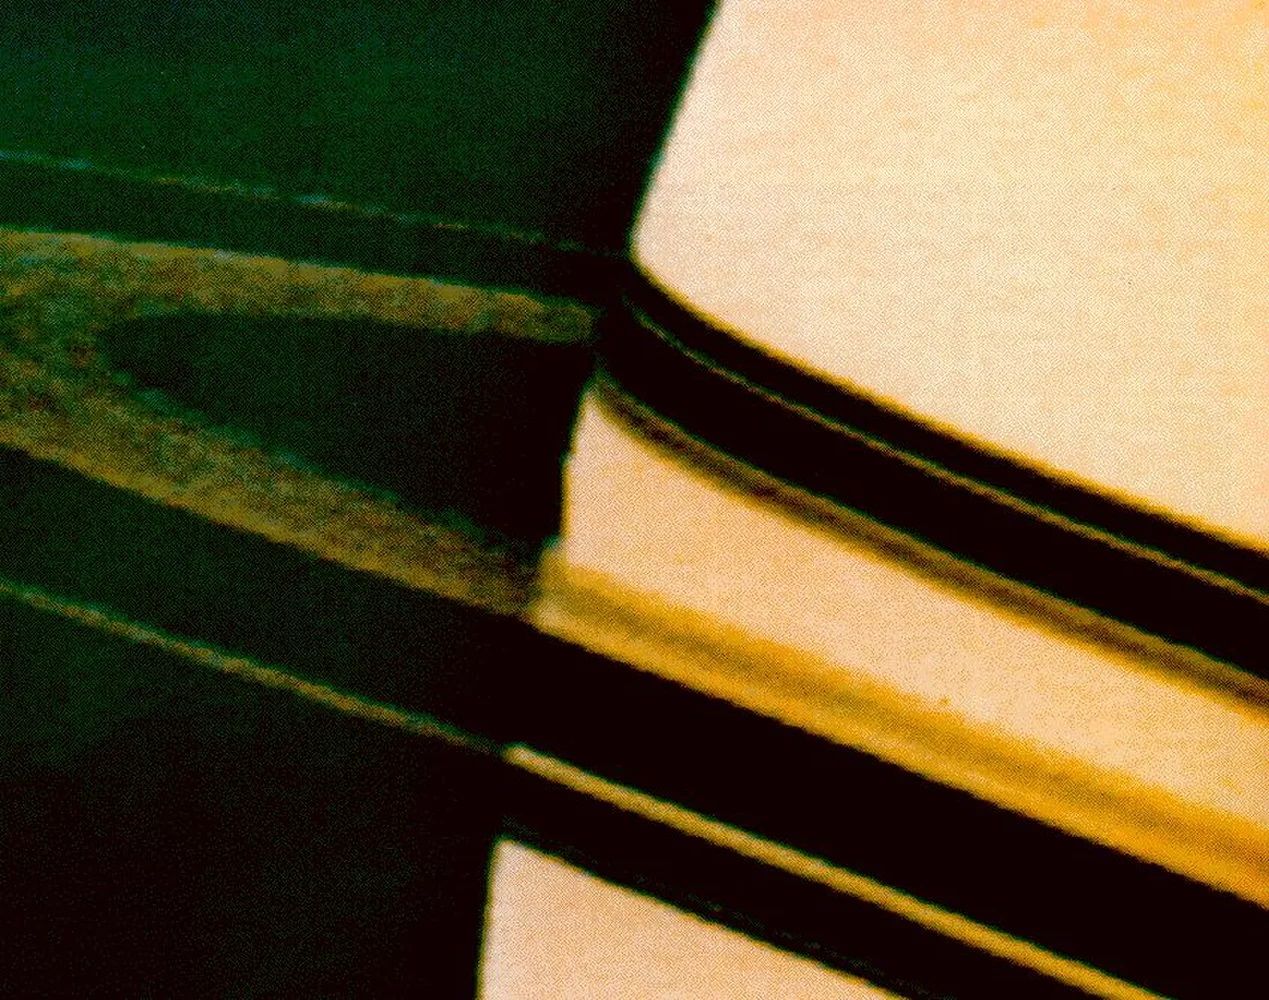 Сатурн, заснет от "Пионер 11"